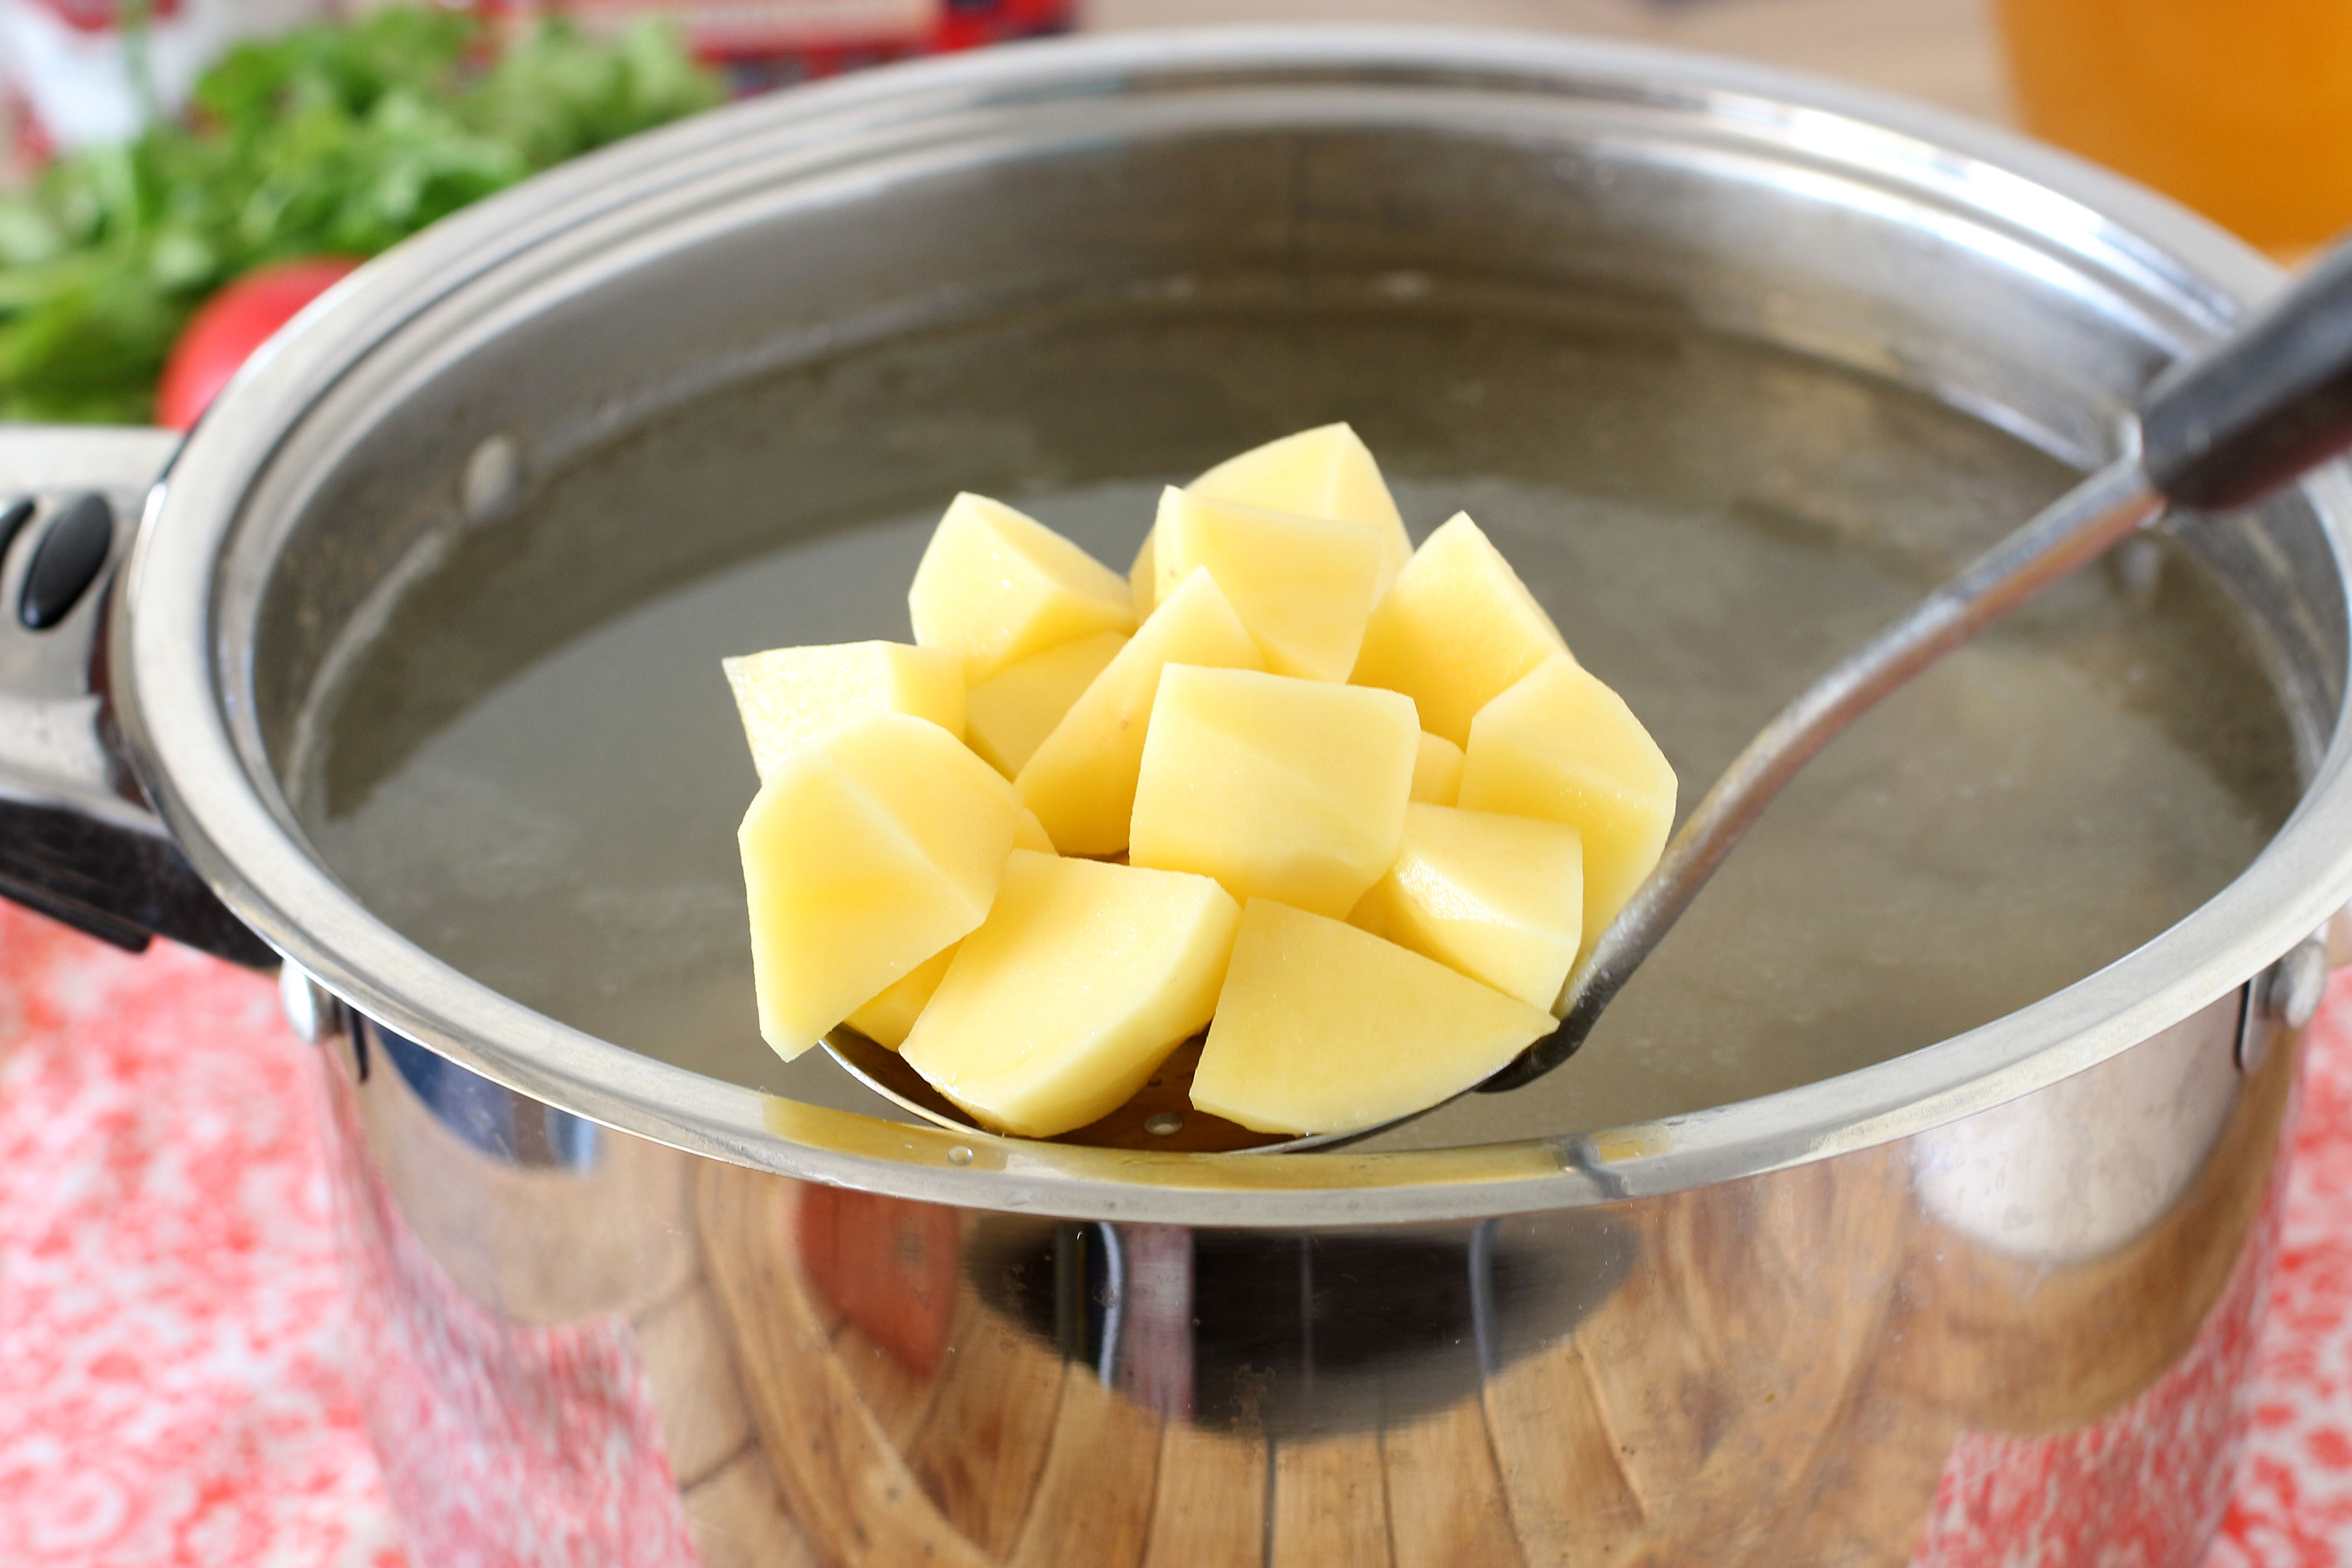 Картошка с водой в кастрюле. Картошка в кастрюле. Картофель нарезанный кубиками в кастрюле. Нарезанная картошка в кастрюле. Кастрюля для варки картофеля.